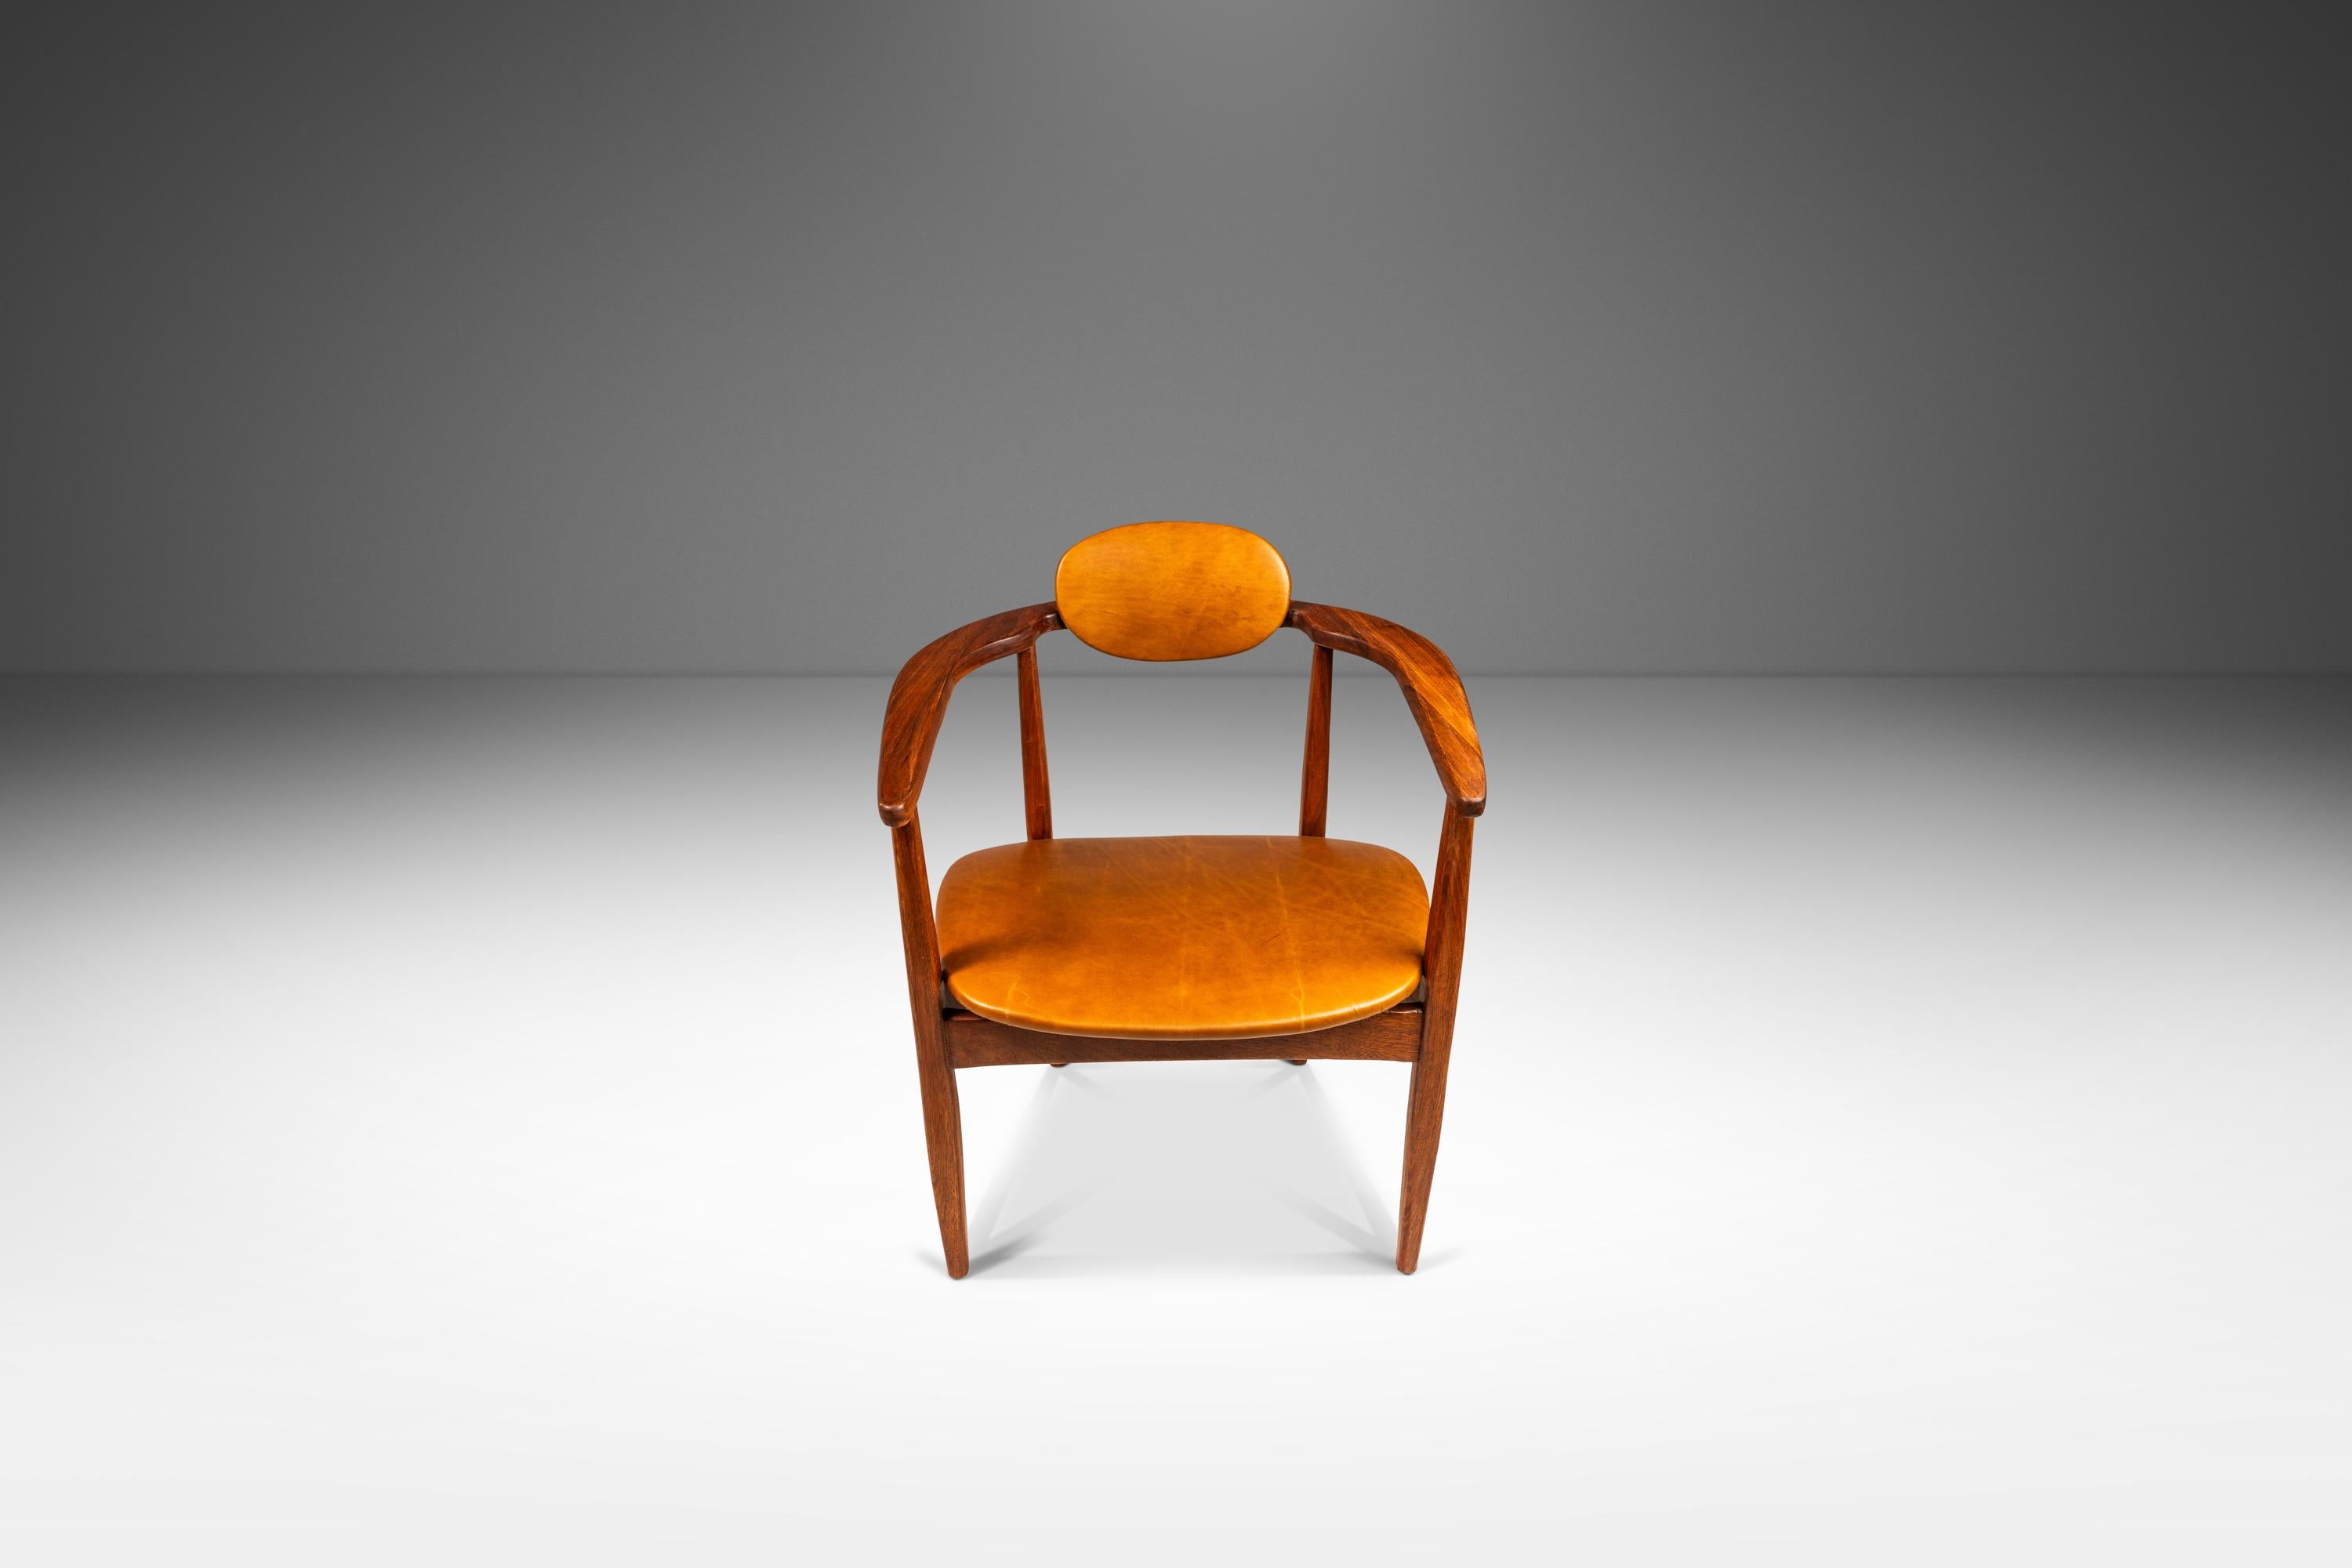 Wir stellen ein einzigartiges und seltenes Set von Sesseln der Jahrhundertmitte vor, die nach dem Vorbild des Stuhls 916-CC von Adrian Pearsall entworfen wurden. Diese verführerische Sitzgruppe wurde vor kurzem einer umfassenden Restaurierung